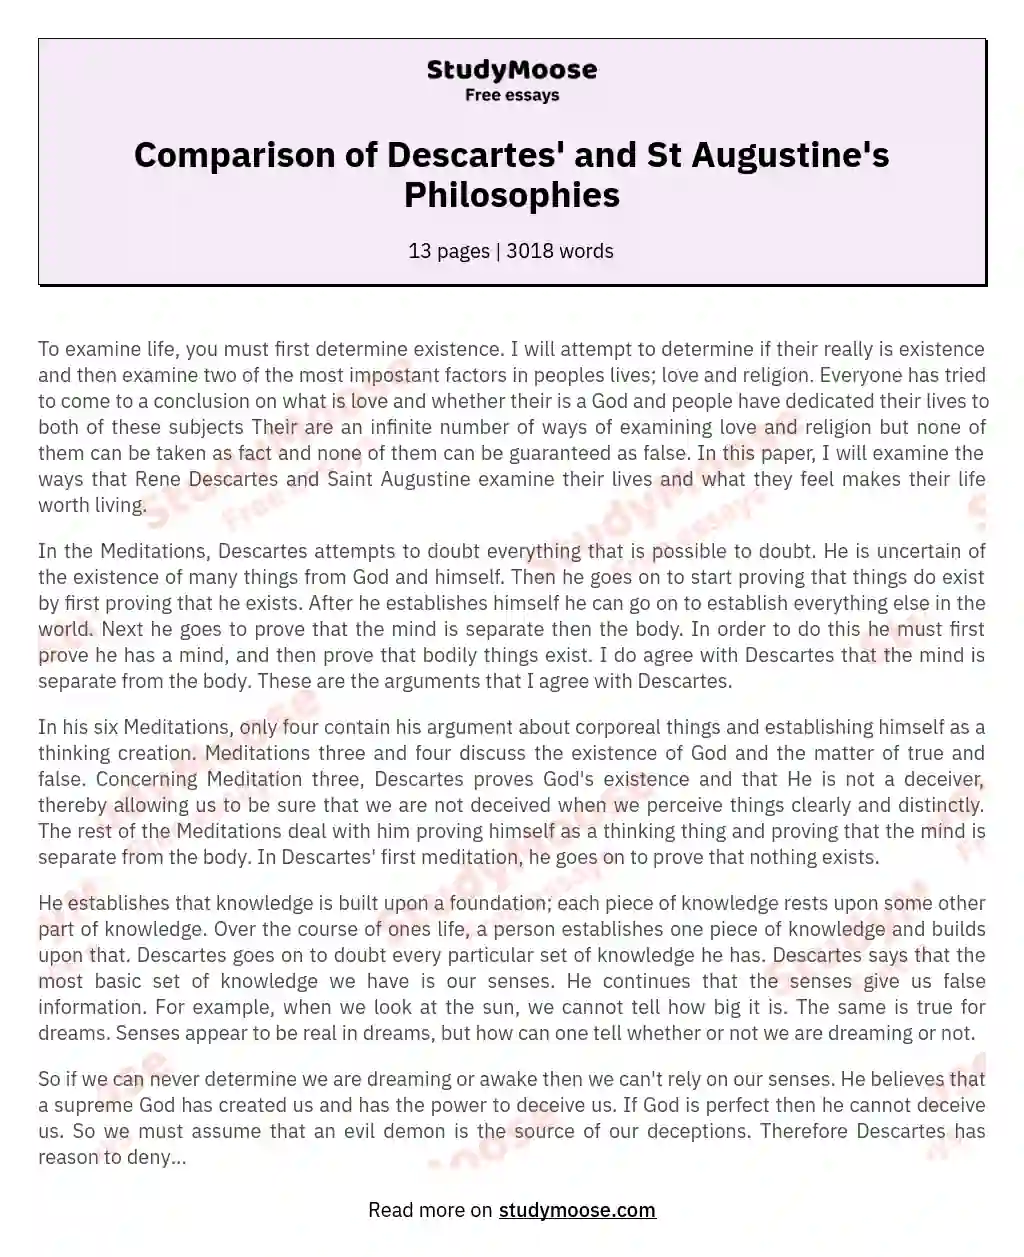 Comparison of Descartes' and St Augustine's Philosophies essay